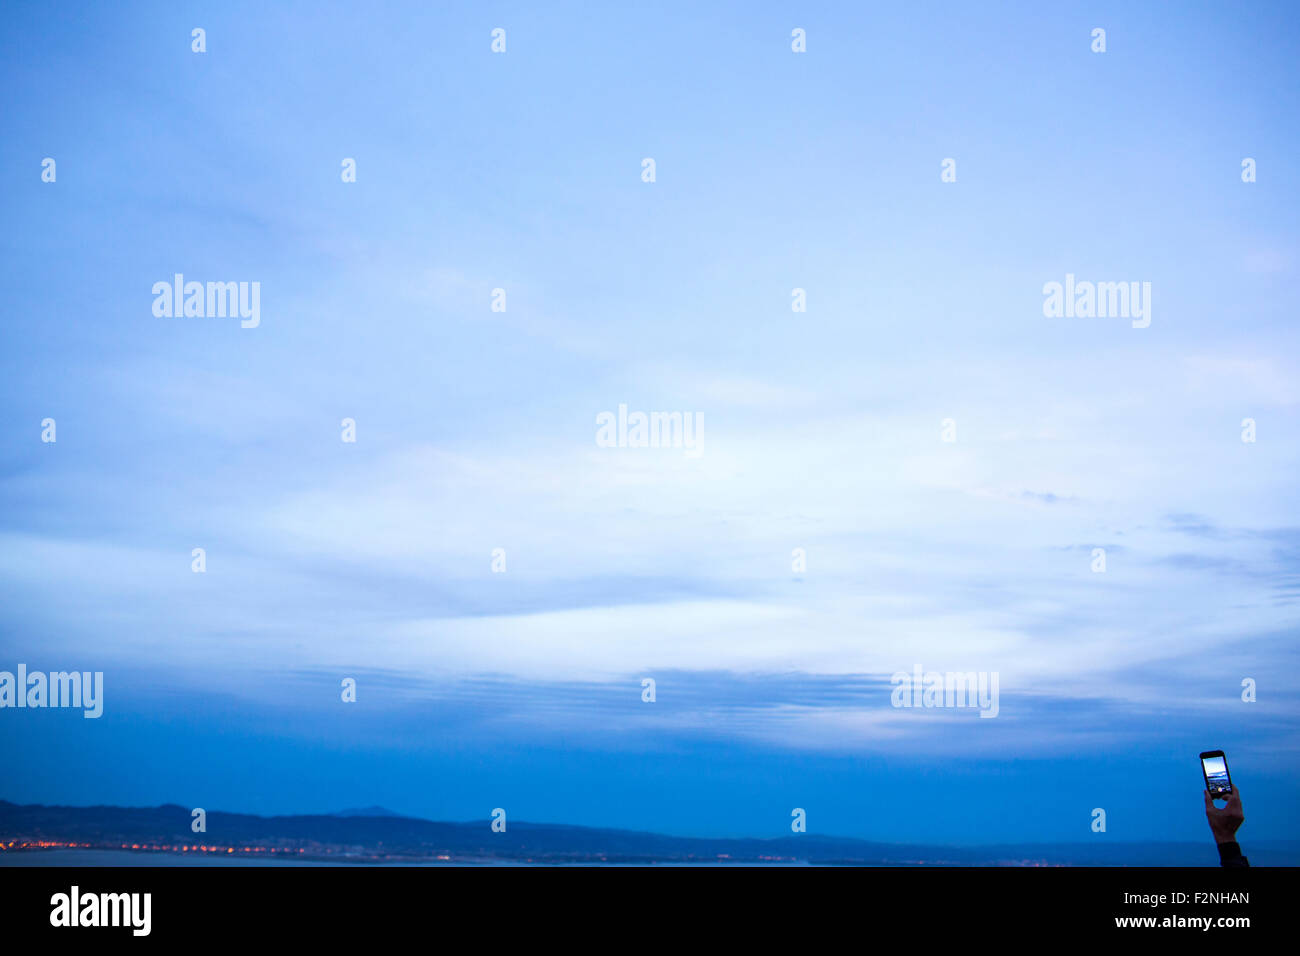 Mano sujetando celular bajo el cielo crepuscular Foto de stock